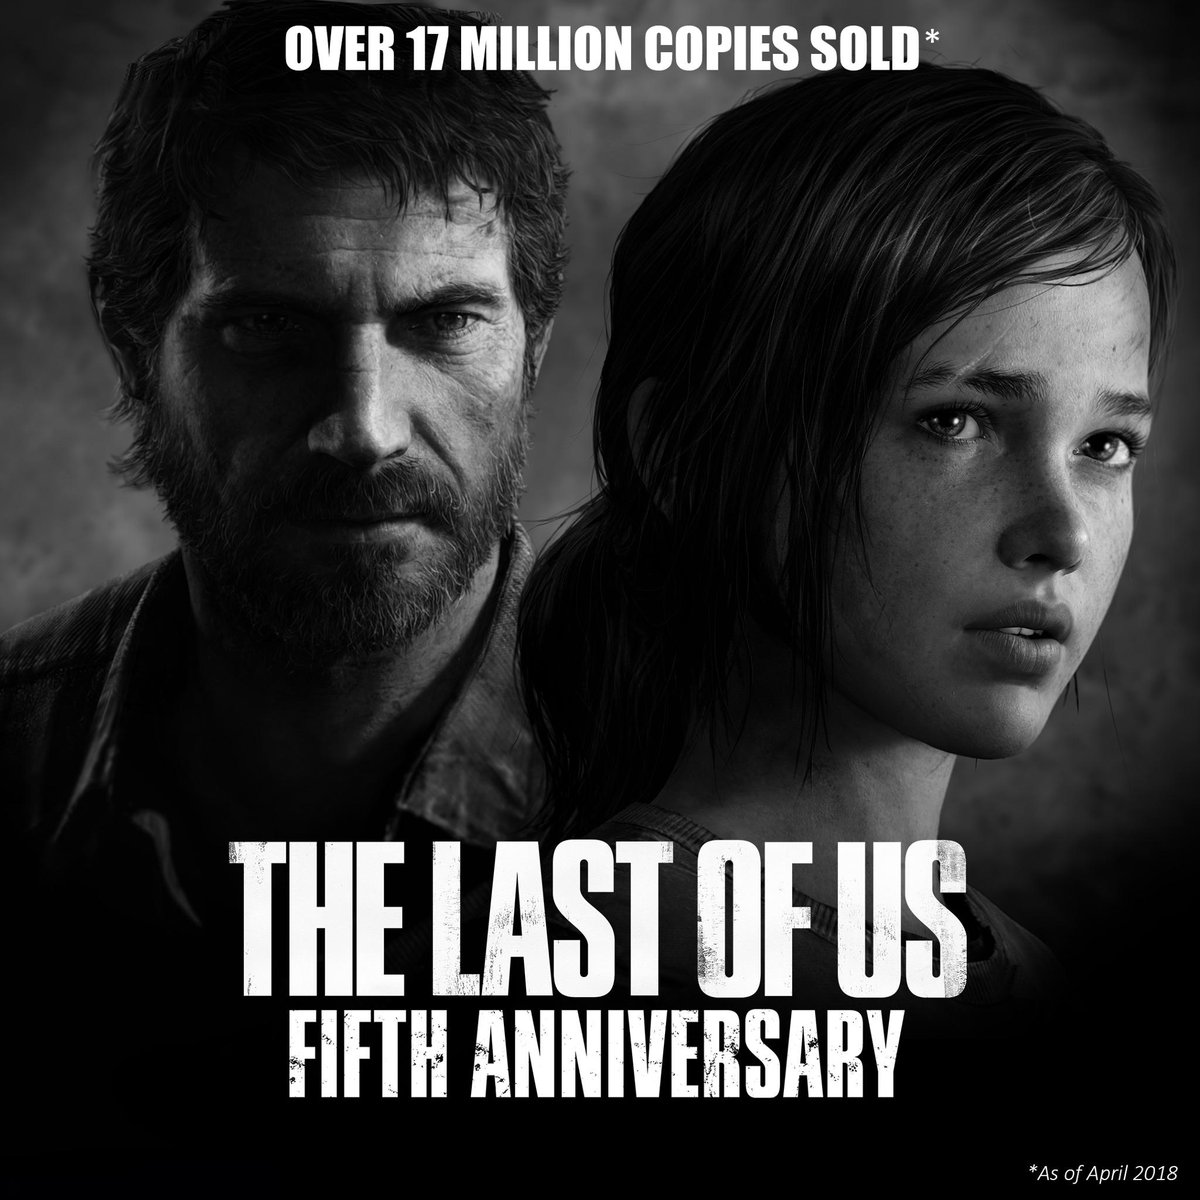 The Last of Us ha vendido 17 millones de copias a lo largo de sus cinco años de vida